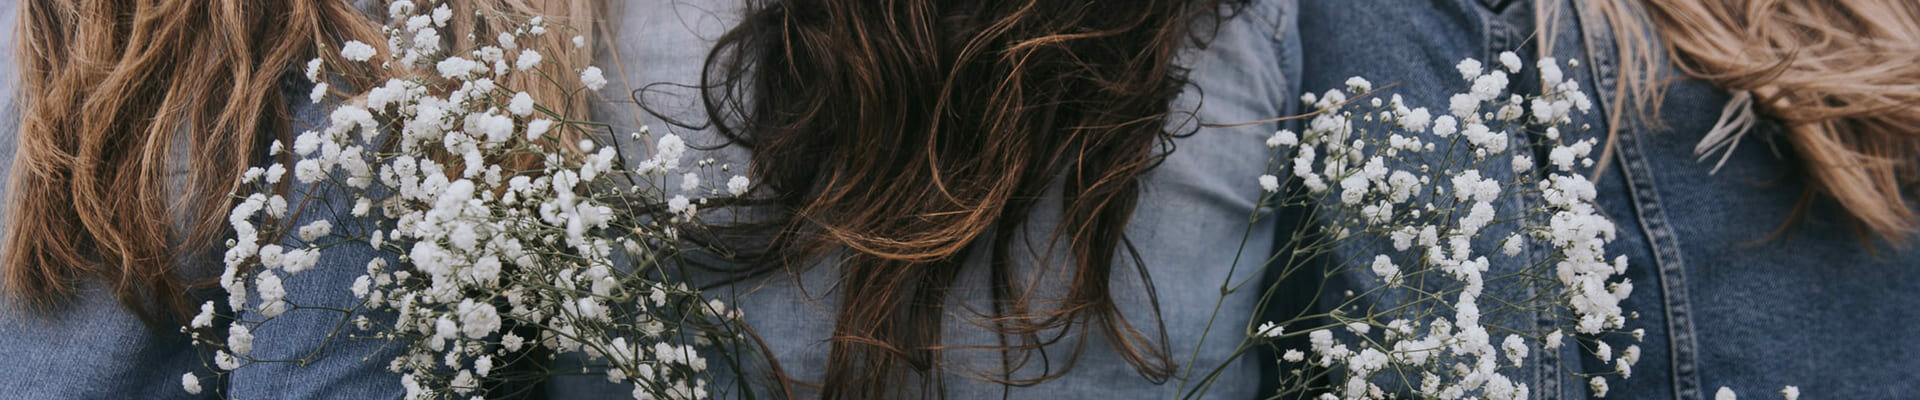 Ombré Hair - Tendance Coiffure | Coiffeur visagiste près de Bergerac